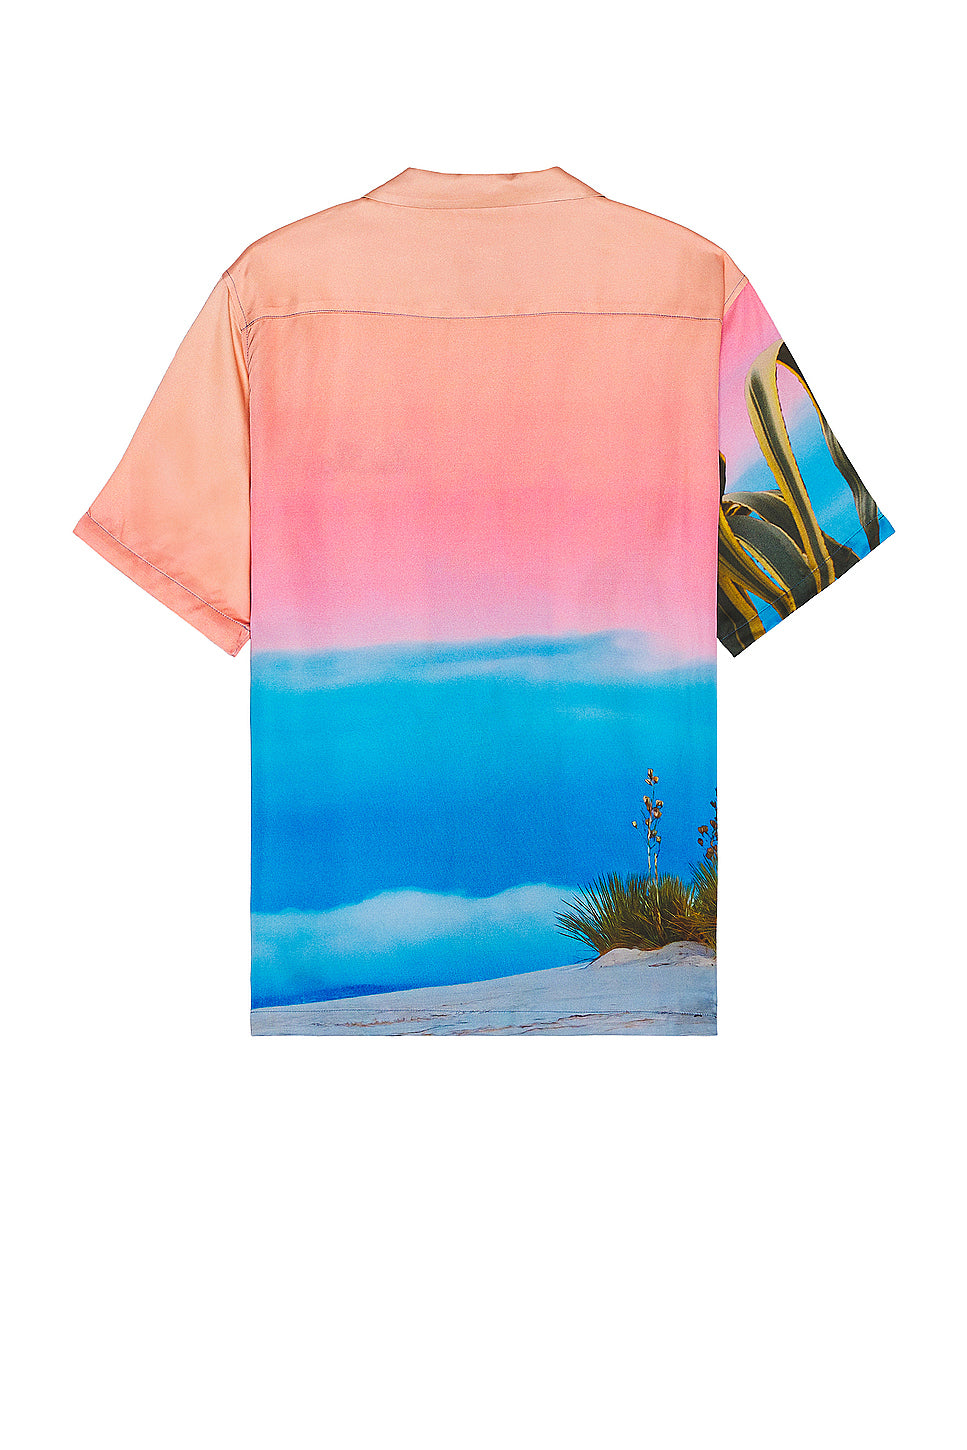 Desert Sunrise Shirt